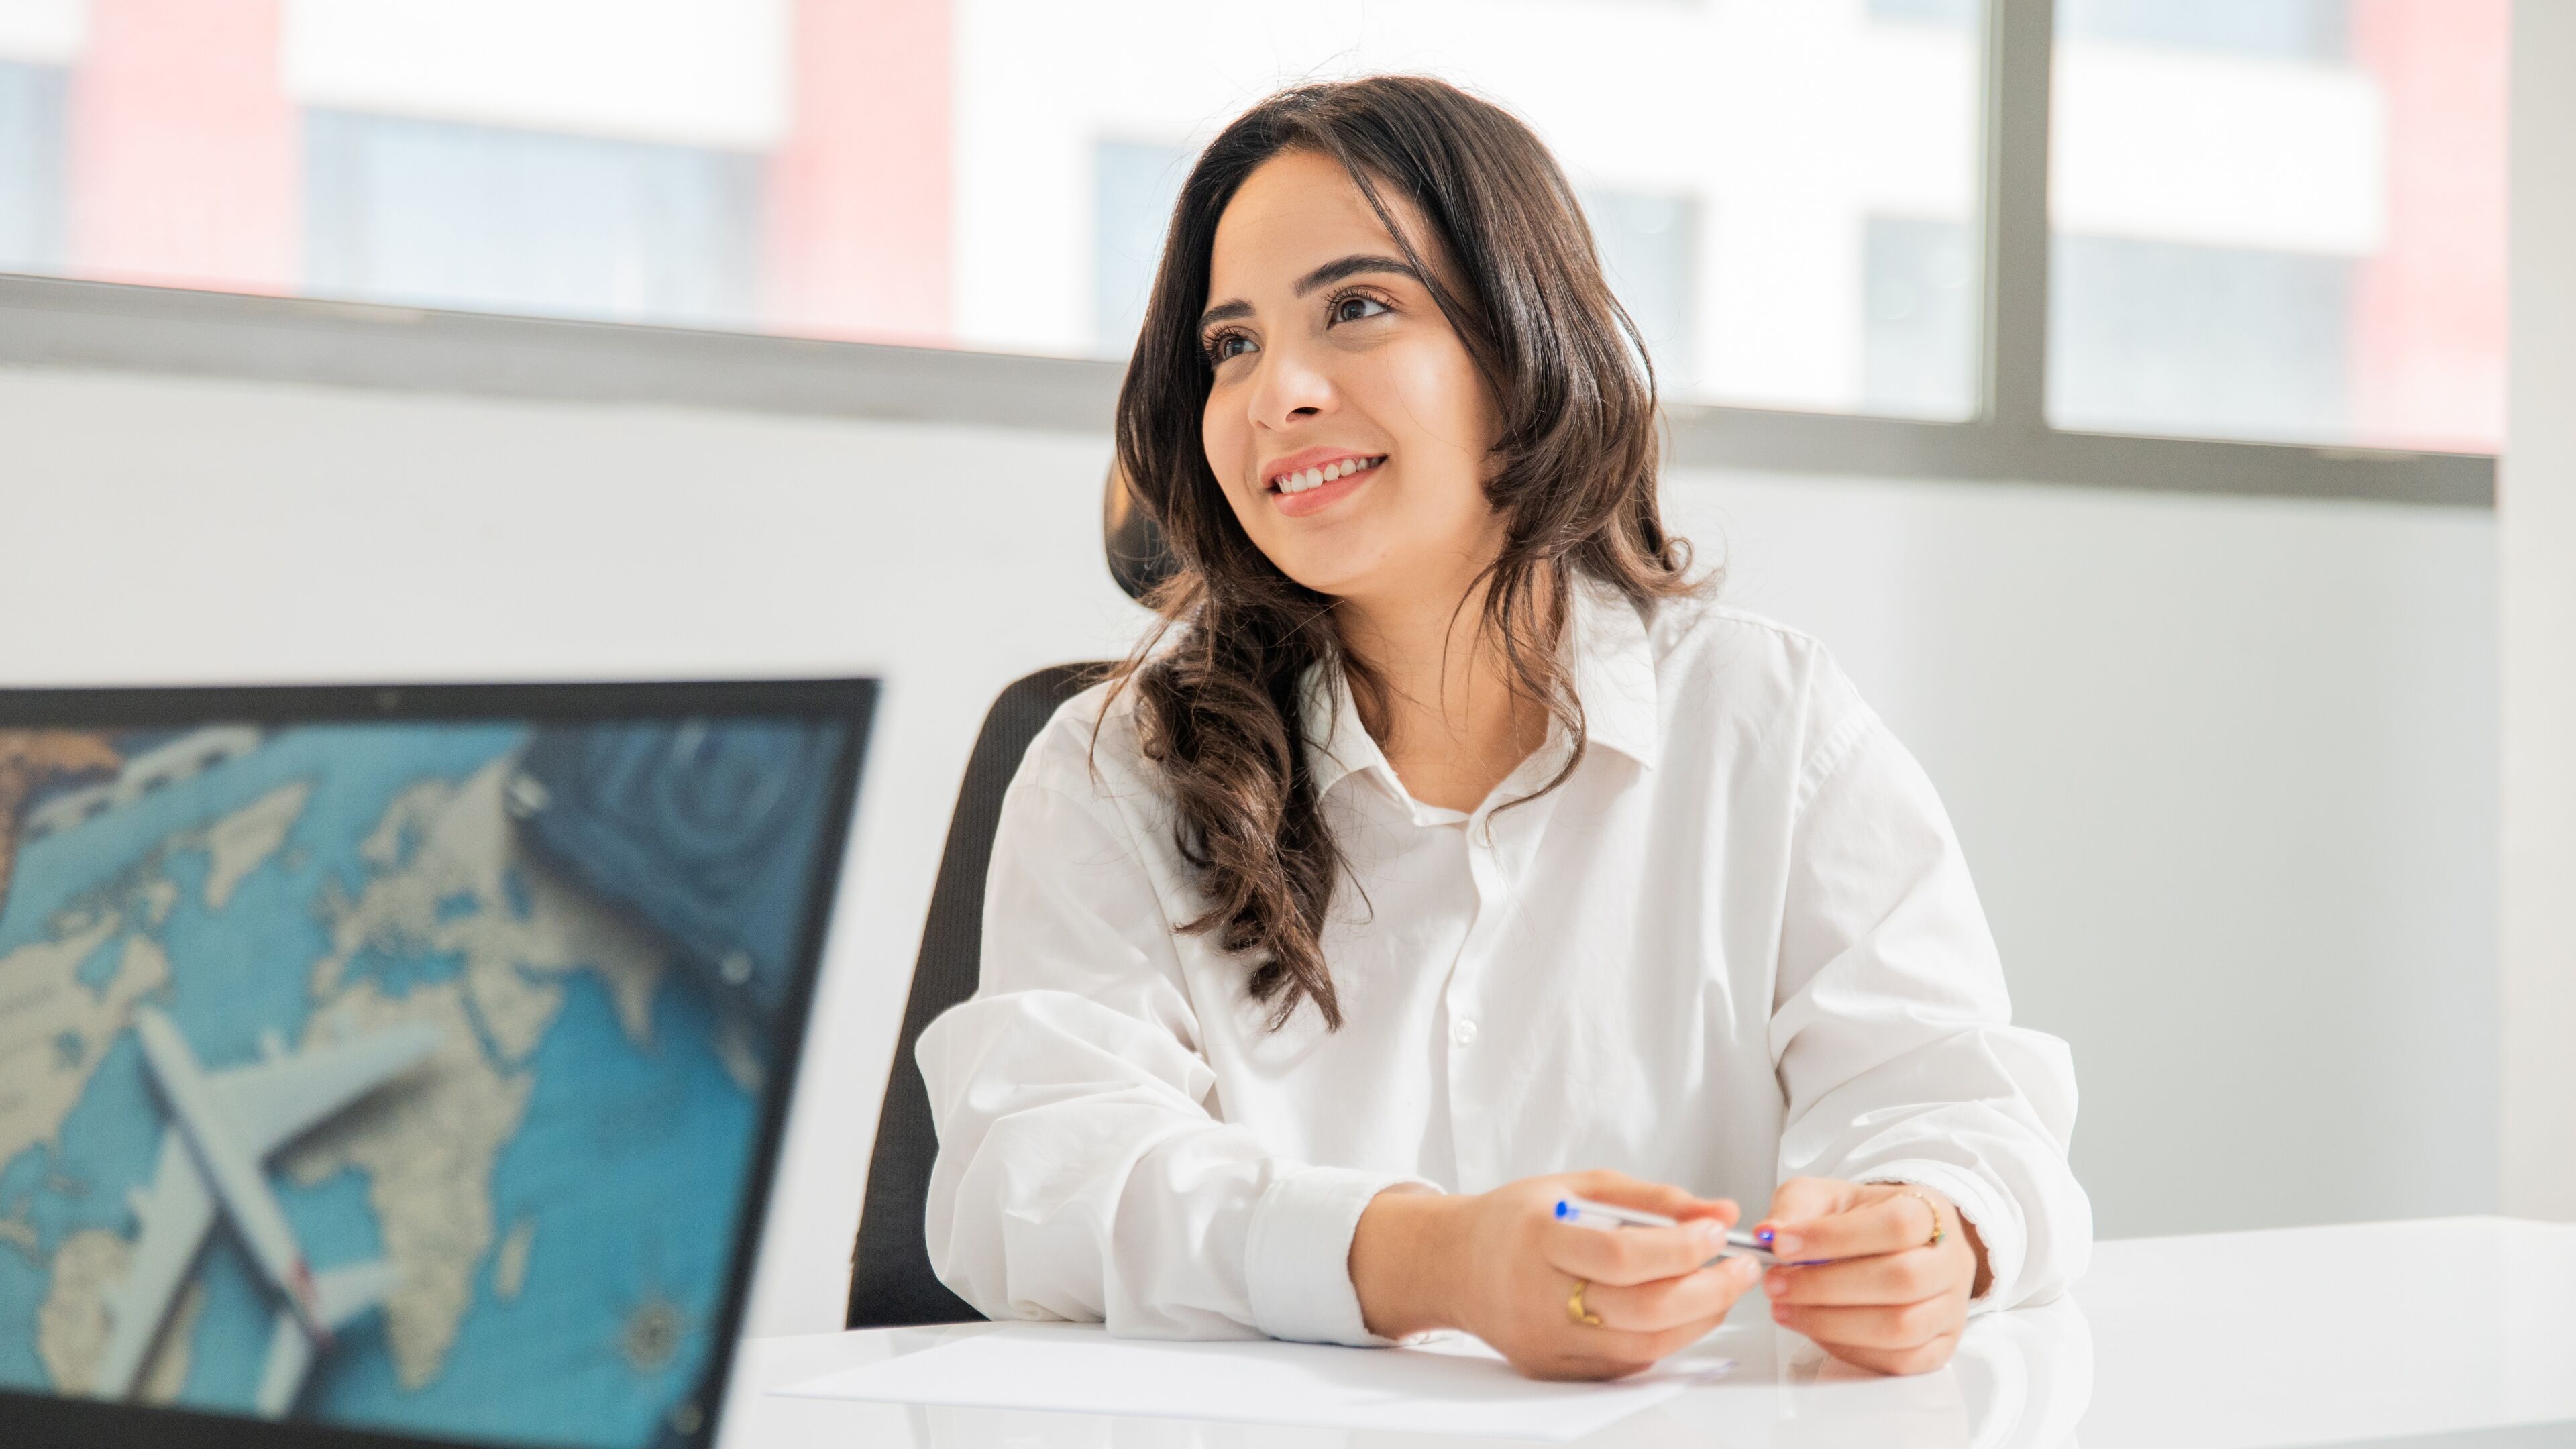 Une femme souriante aux longs cheveux bruns, vêtue d'une blouse blanche, assise à un bureau dans un bureau lumineux, avec une carte du monde sur son écran d'ordinateur, transmettant un sentiment d'engagement commercial mondial.